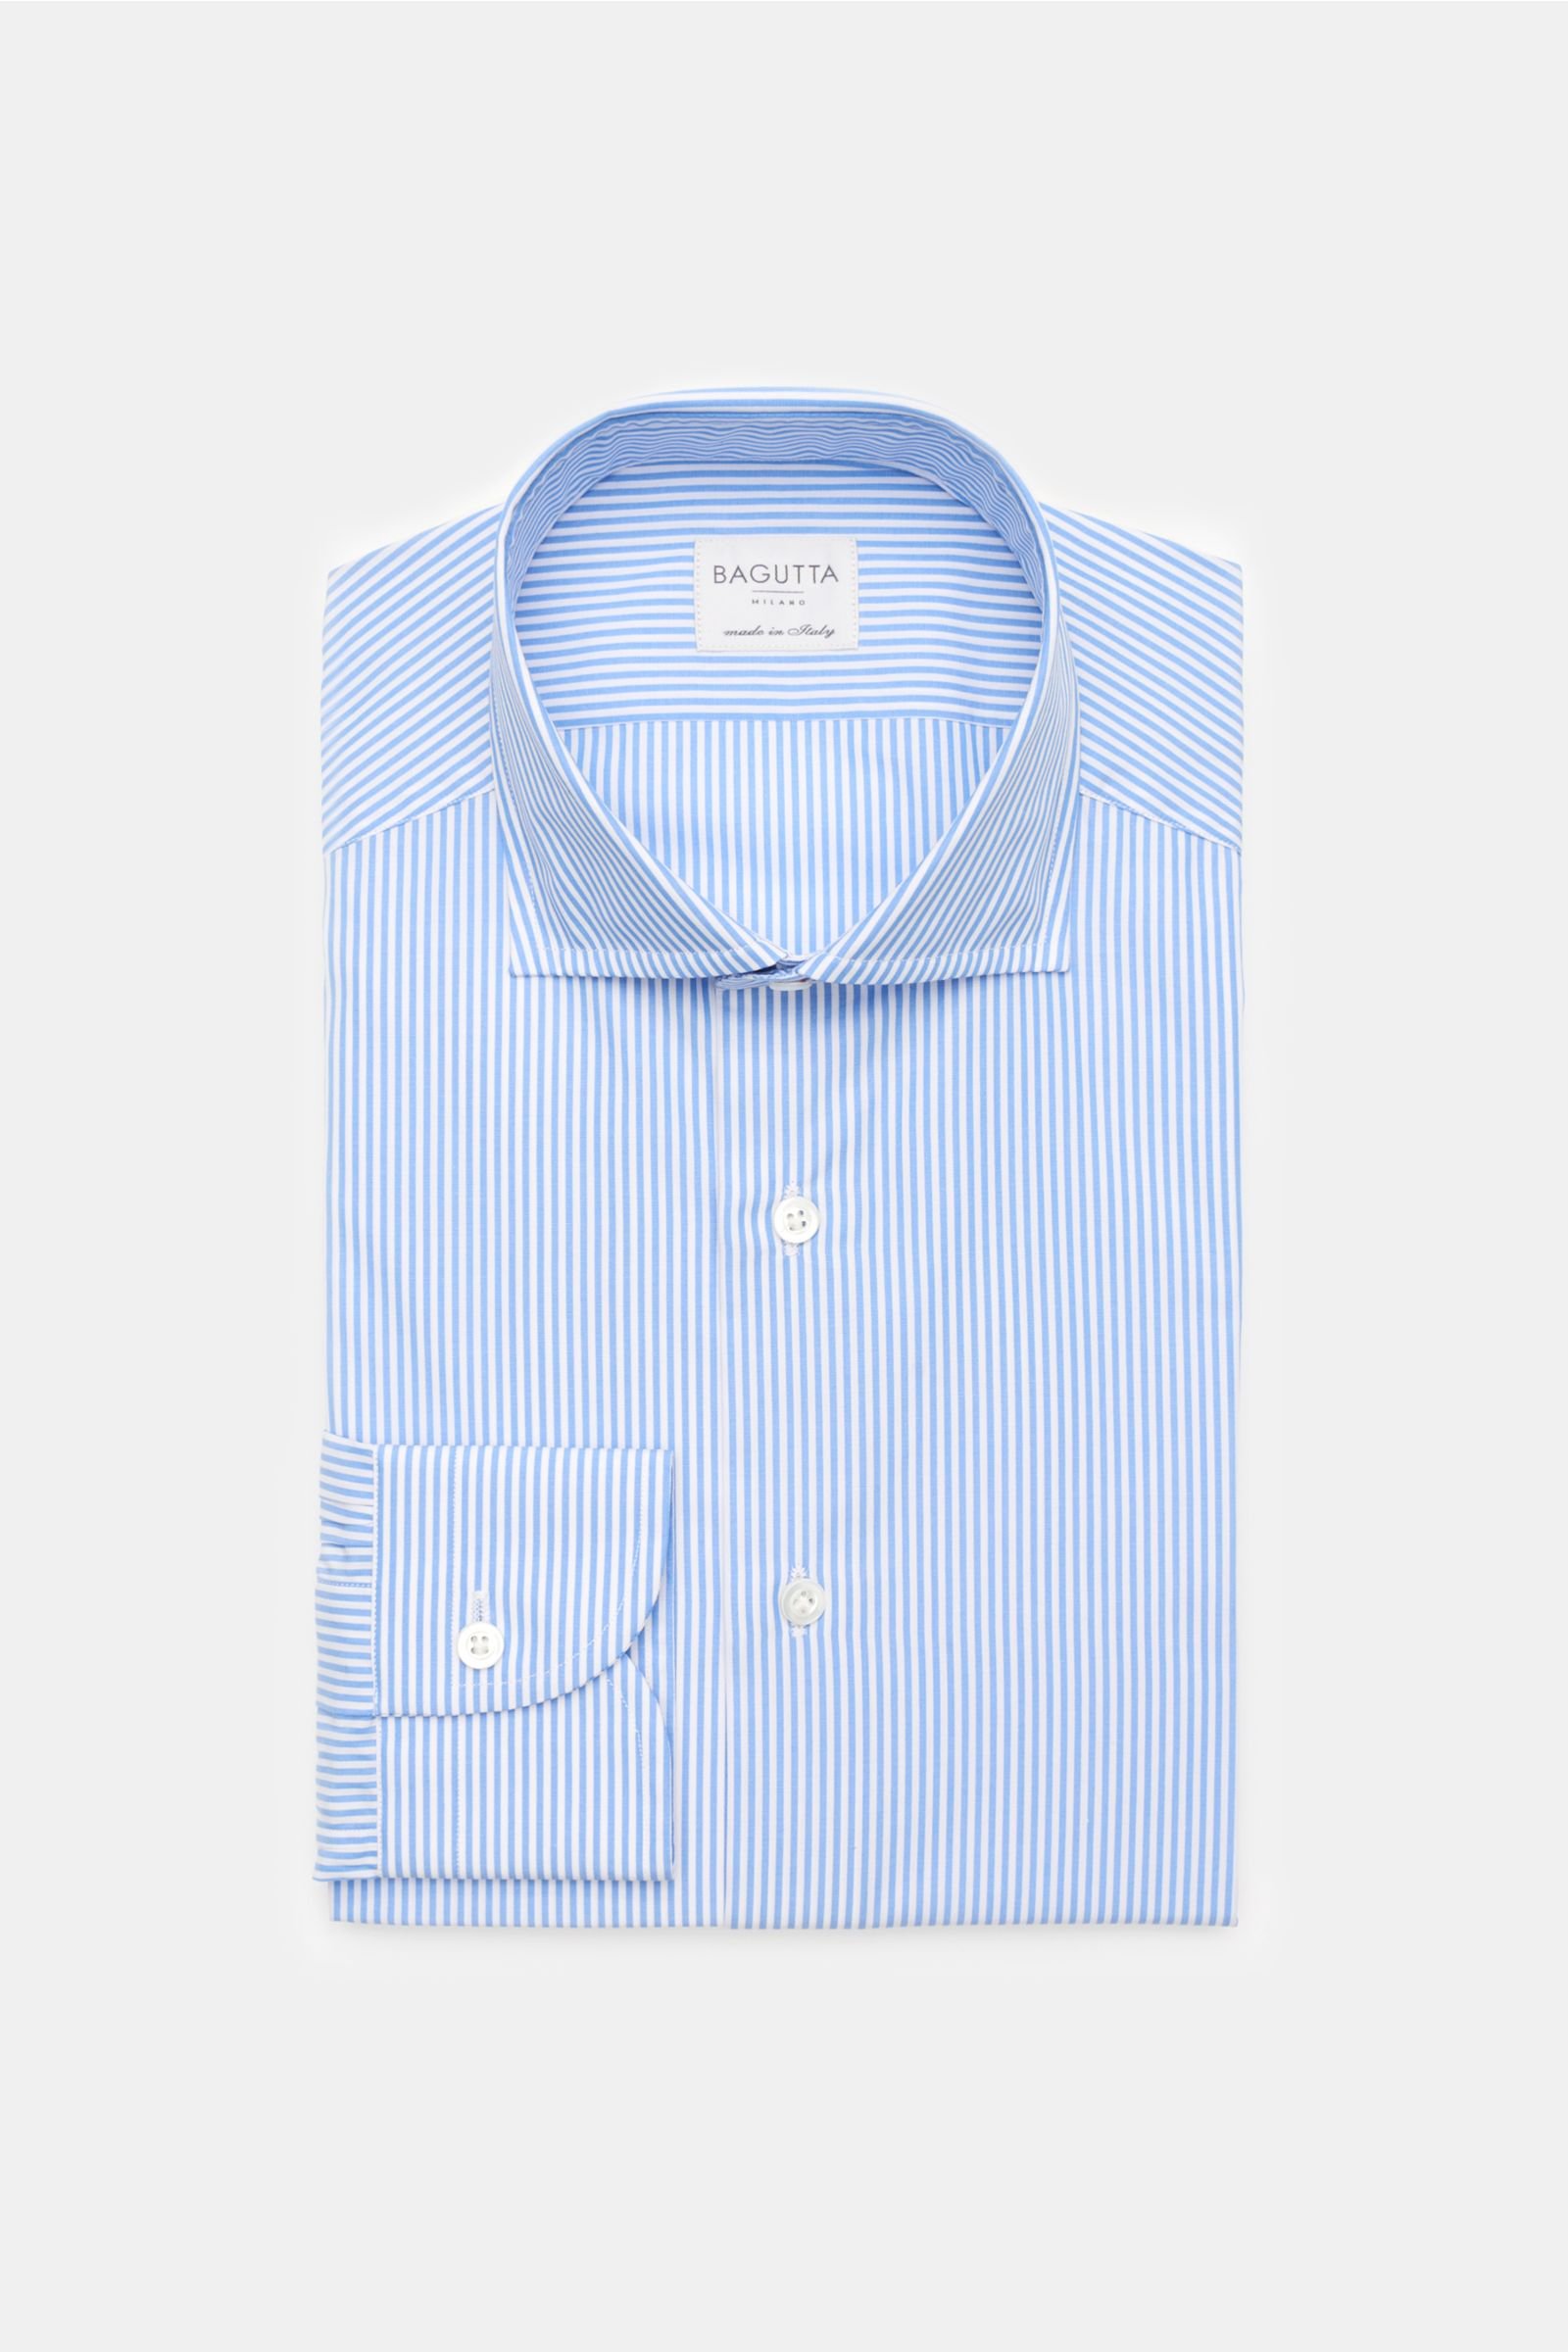 Business shirt shark collar light blue/white striped